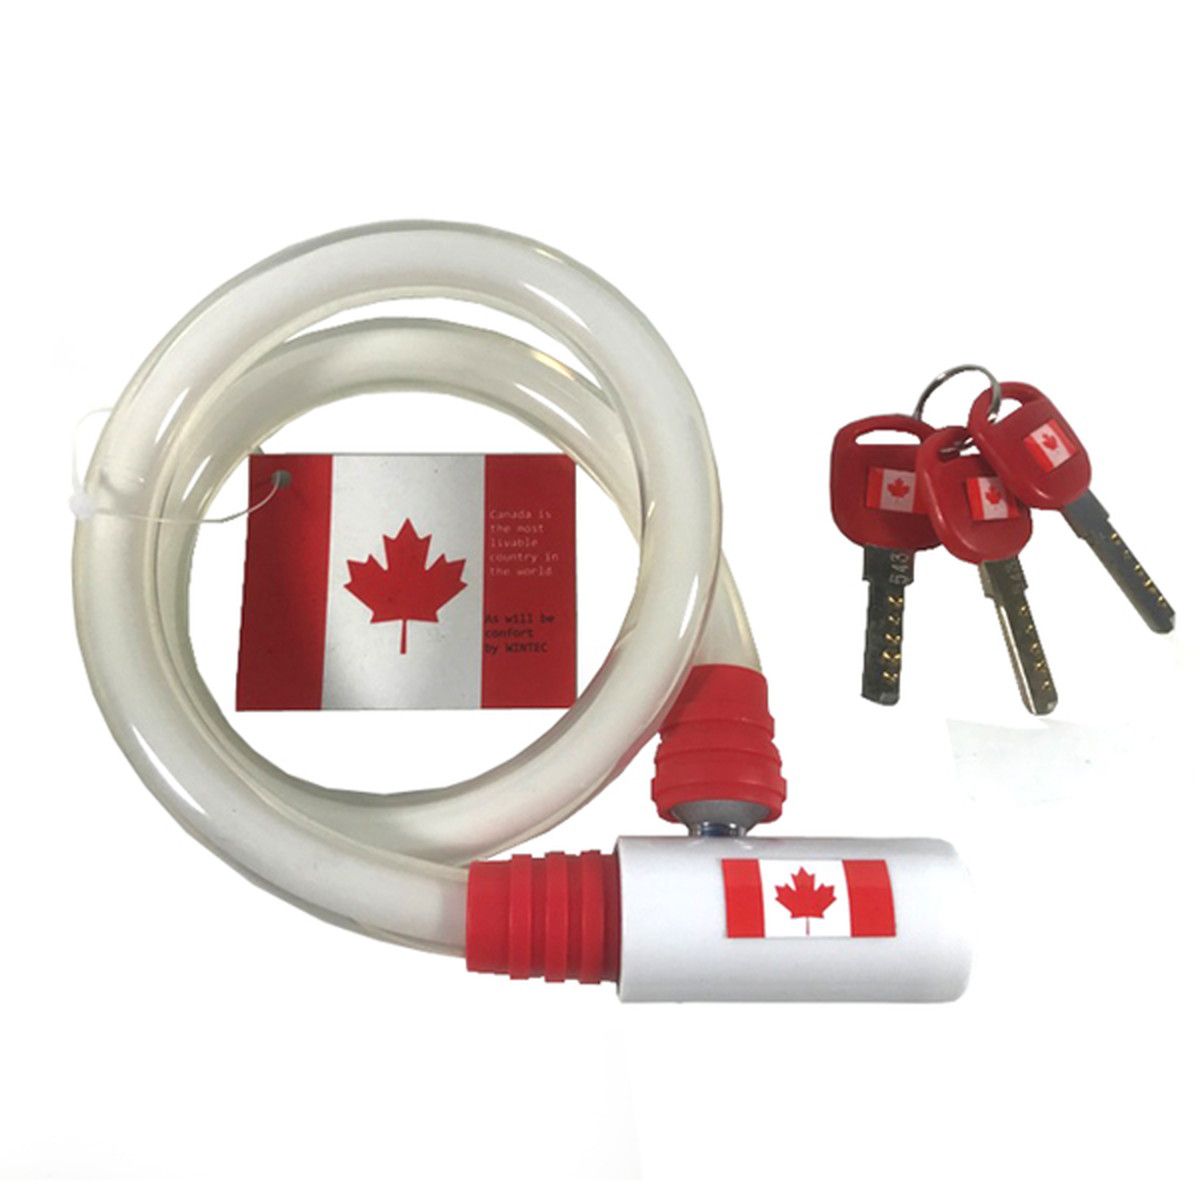 世界で一番住みやすい国「カナダ」の国旗をモチーフにした ワイヤーロック AQUAの特徴 透明感のあるクリアカバー ピッキングされにくいディンプルキー サイズ：φ14×650mm 重量：275g ディンプルキー3本付属